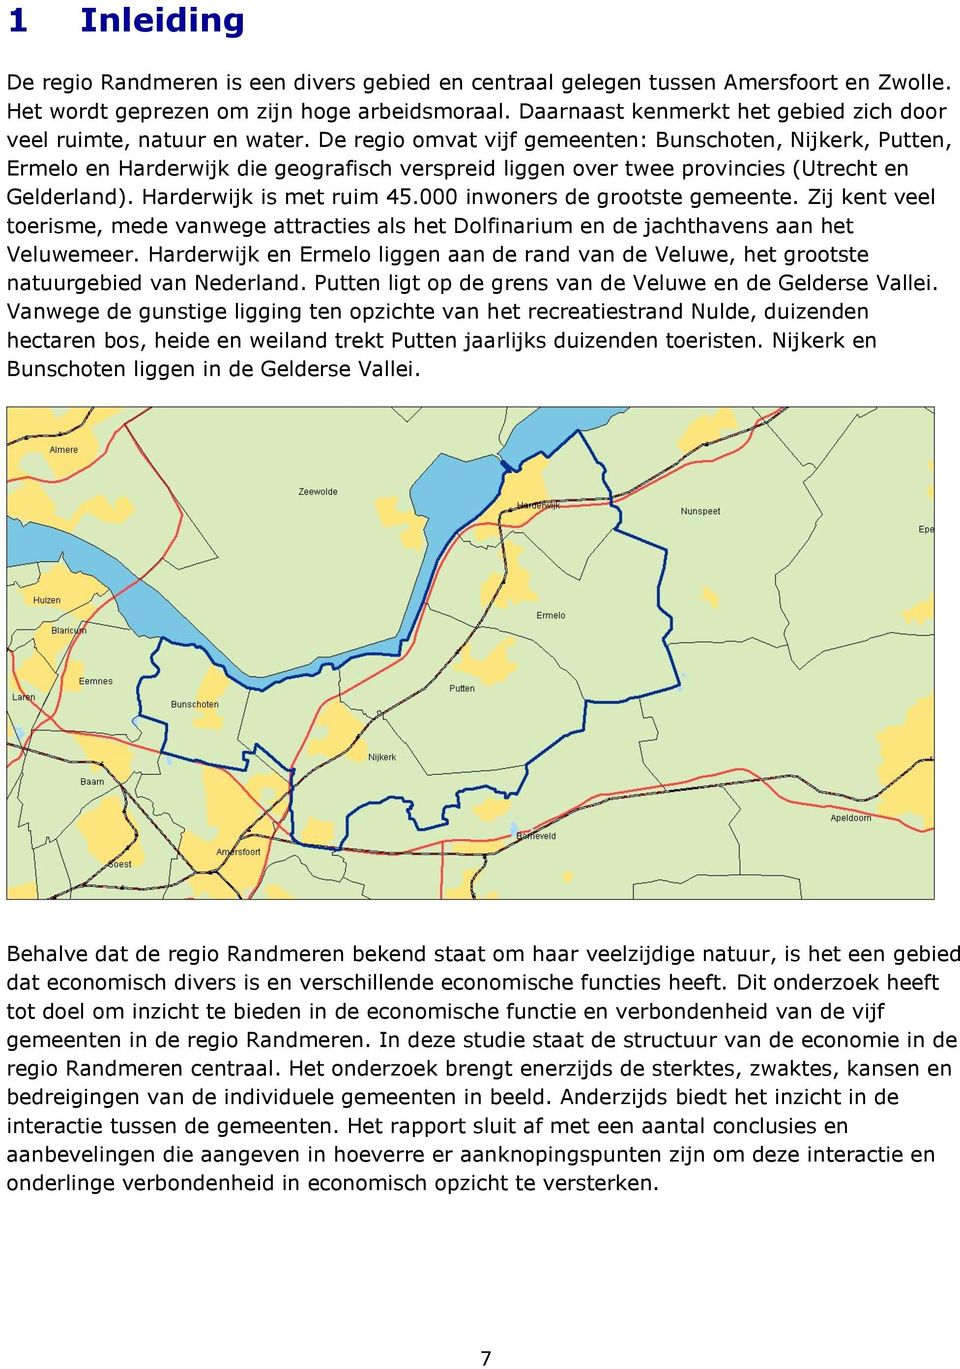 De regio omvat vijf gemeenten: Bunschoten, Nijkerk, Putten, Ermelo en Harderwijk die geografisch verspreid liggen over twee provincies (Utrecht en Gelderland). Harderwijk is met ruim 45.